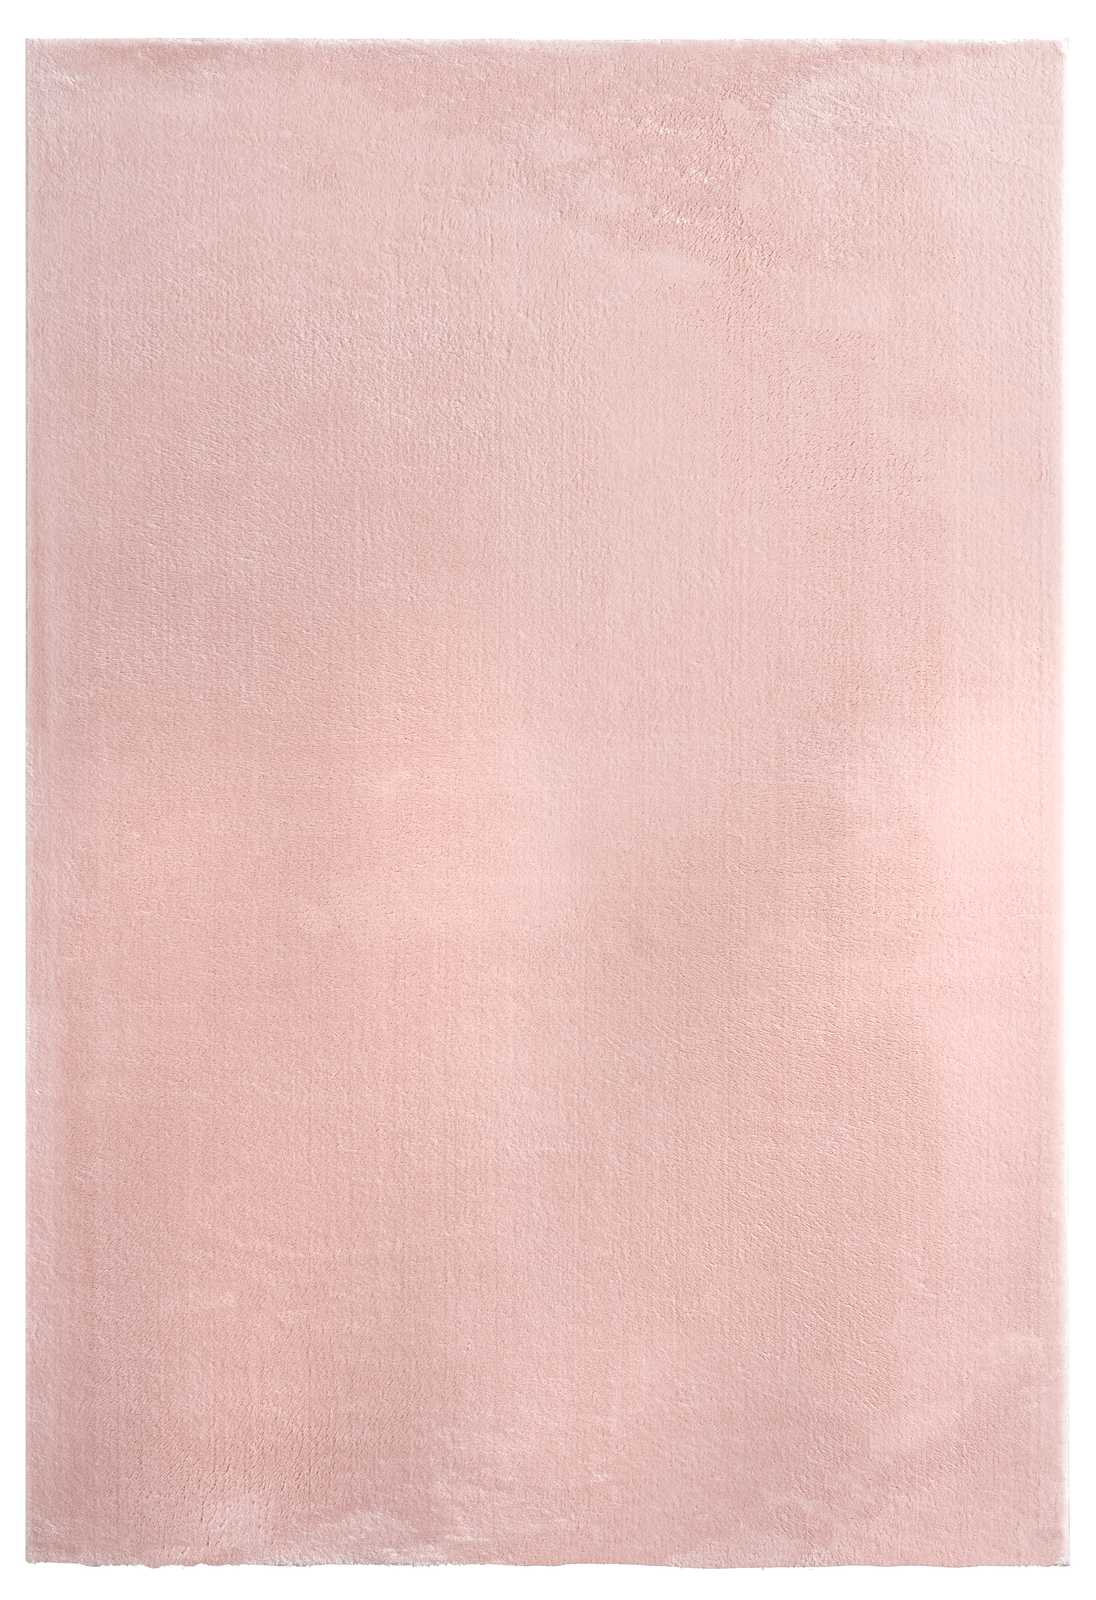             Fijnpolig tapijt in roze - 110 x 60 cm
        